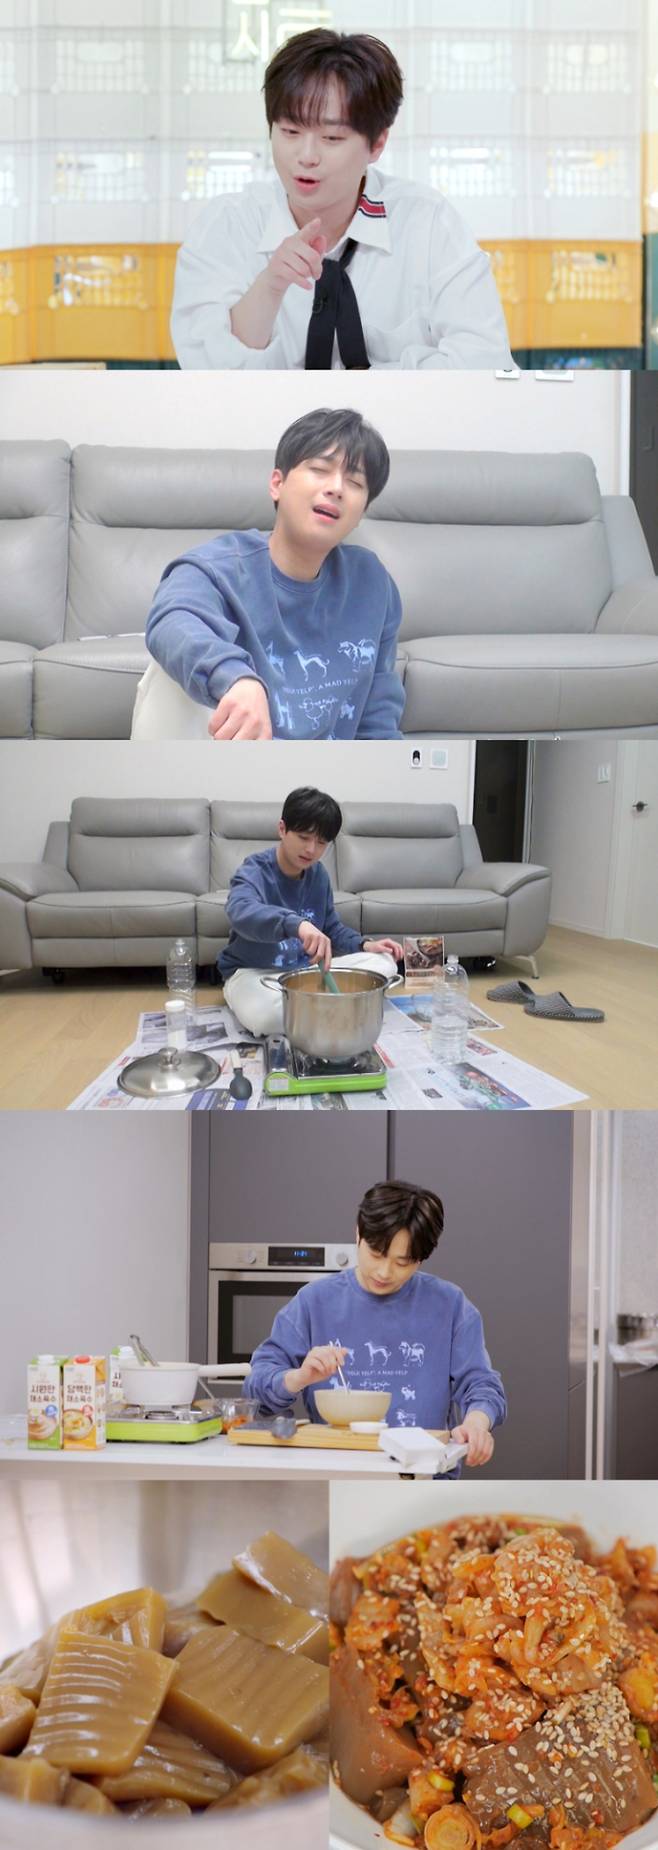 사진제공: KBS 2TV ‘신상출시 편스토랑’